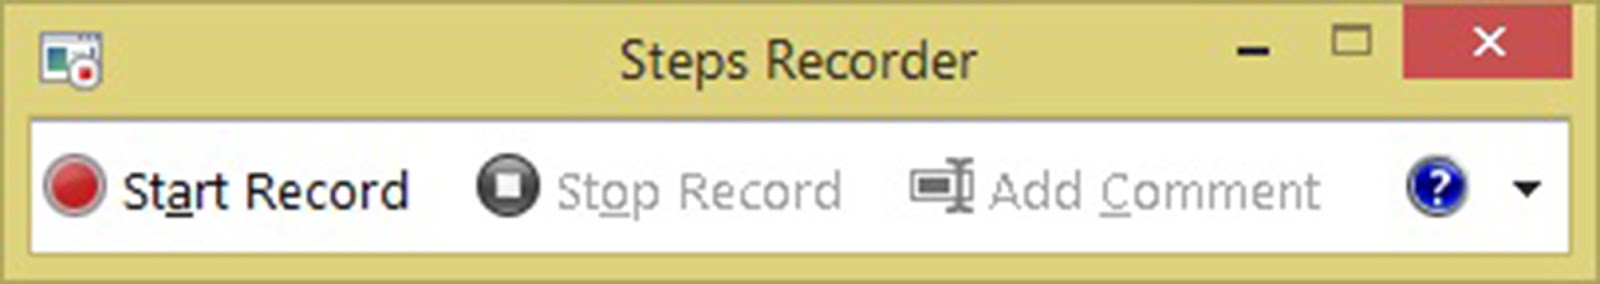 Và công cụ Steps Recorder sẽ xuất hiện trên màn hình